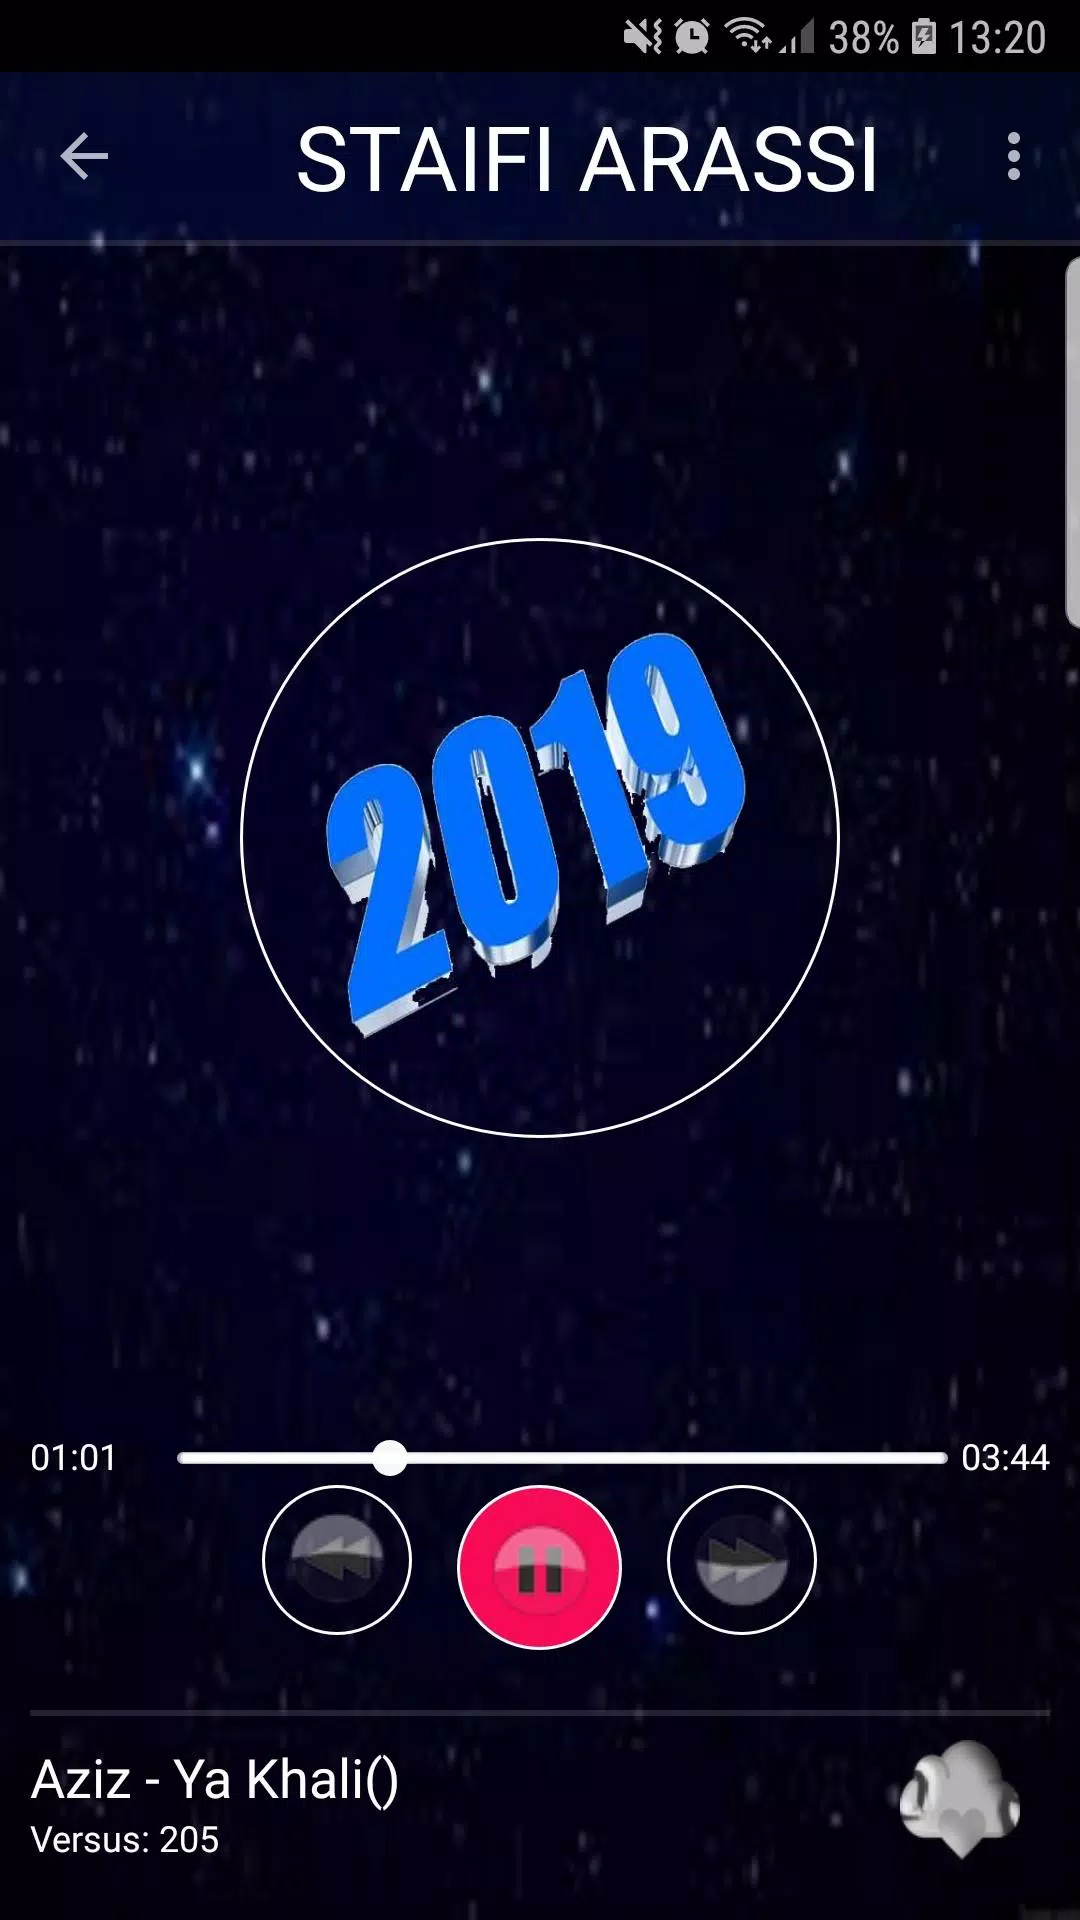 اغاني سطايفي عراسي 2019 بدون نت-Staifi Arassi mp3 APK pour Android  Télécharger